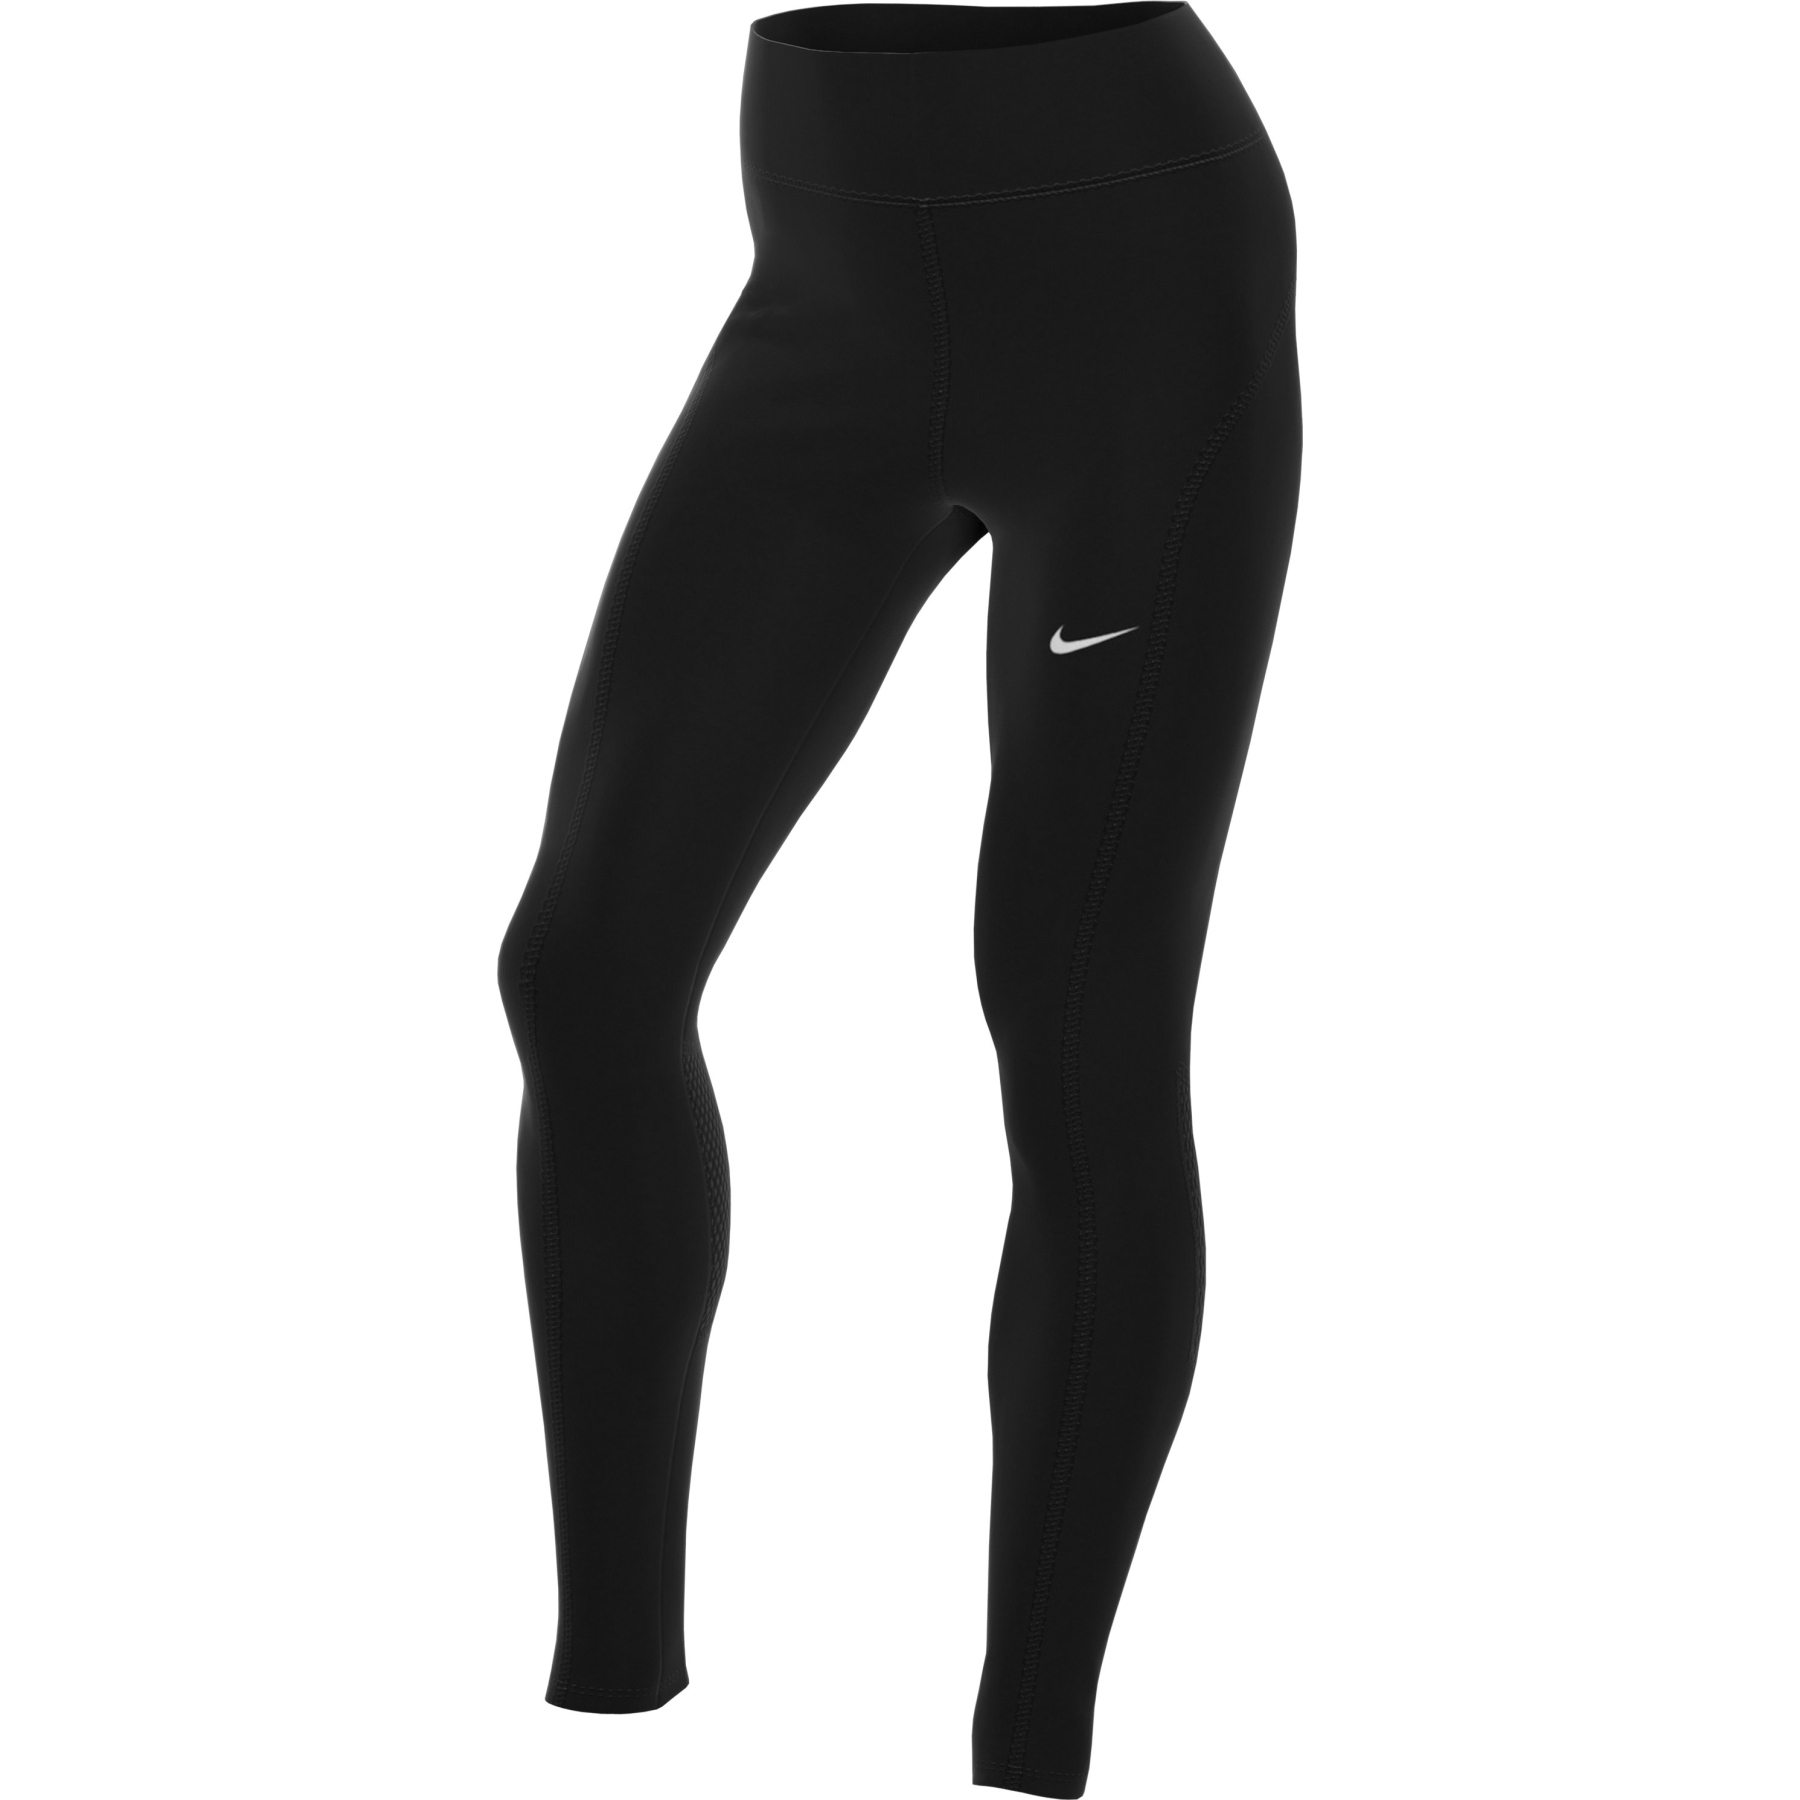 Produktbild von Nike Epic Fast Lauf-Leggings mit halbhohem Bund für Damen - schwarz/reflective silver CZ9240-010